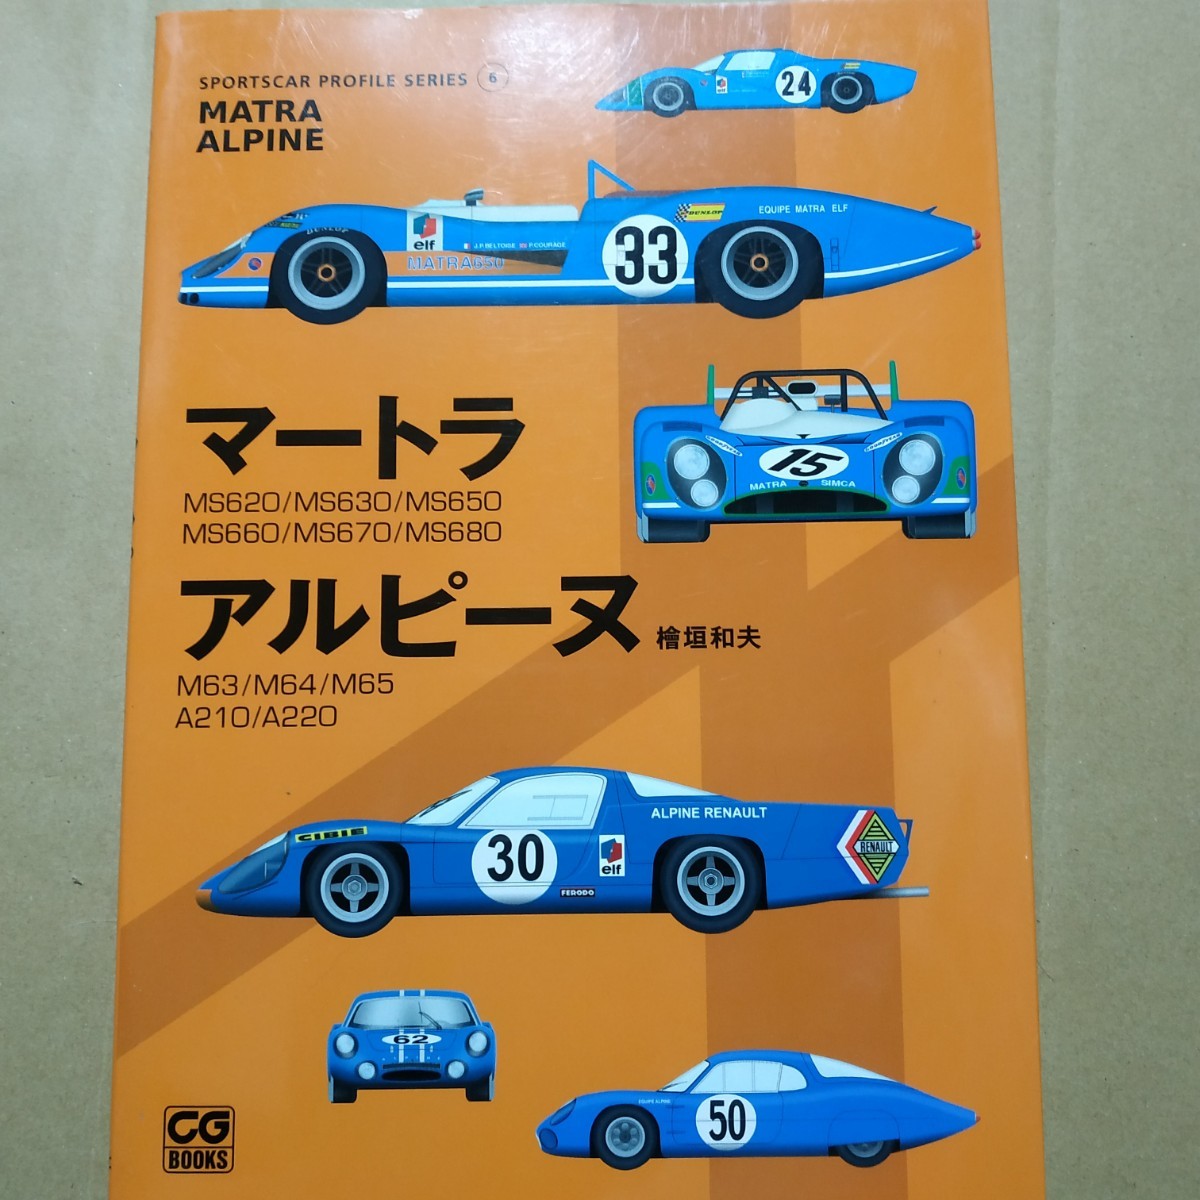 送無料 マートラ アルピーヌスポーツカープロファイルシリーズ6 檜垣和夫 二玄社 マトラ